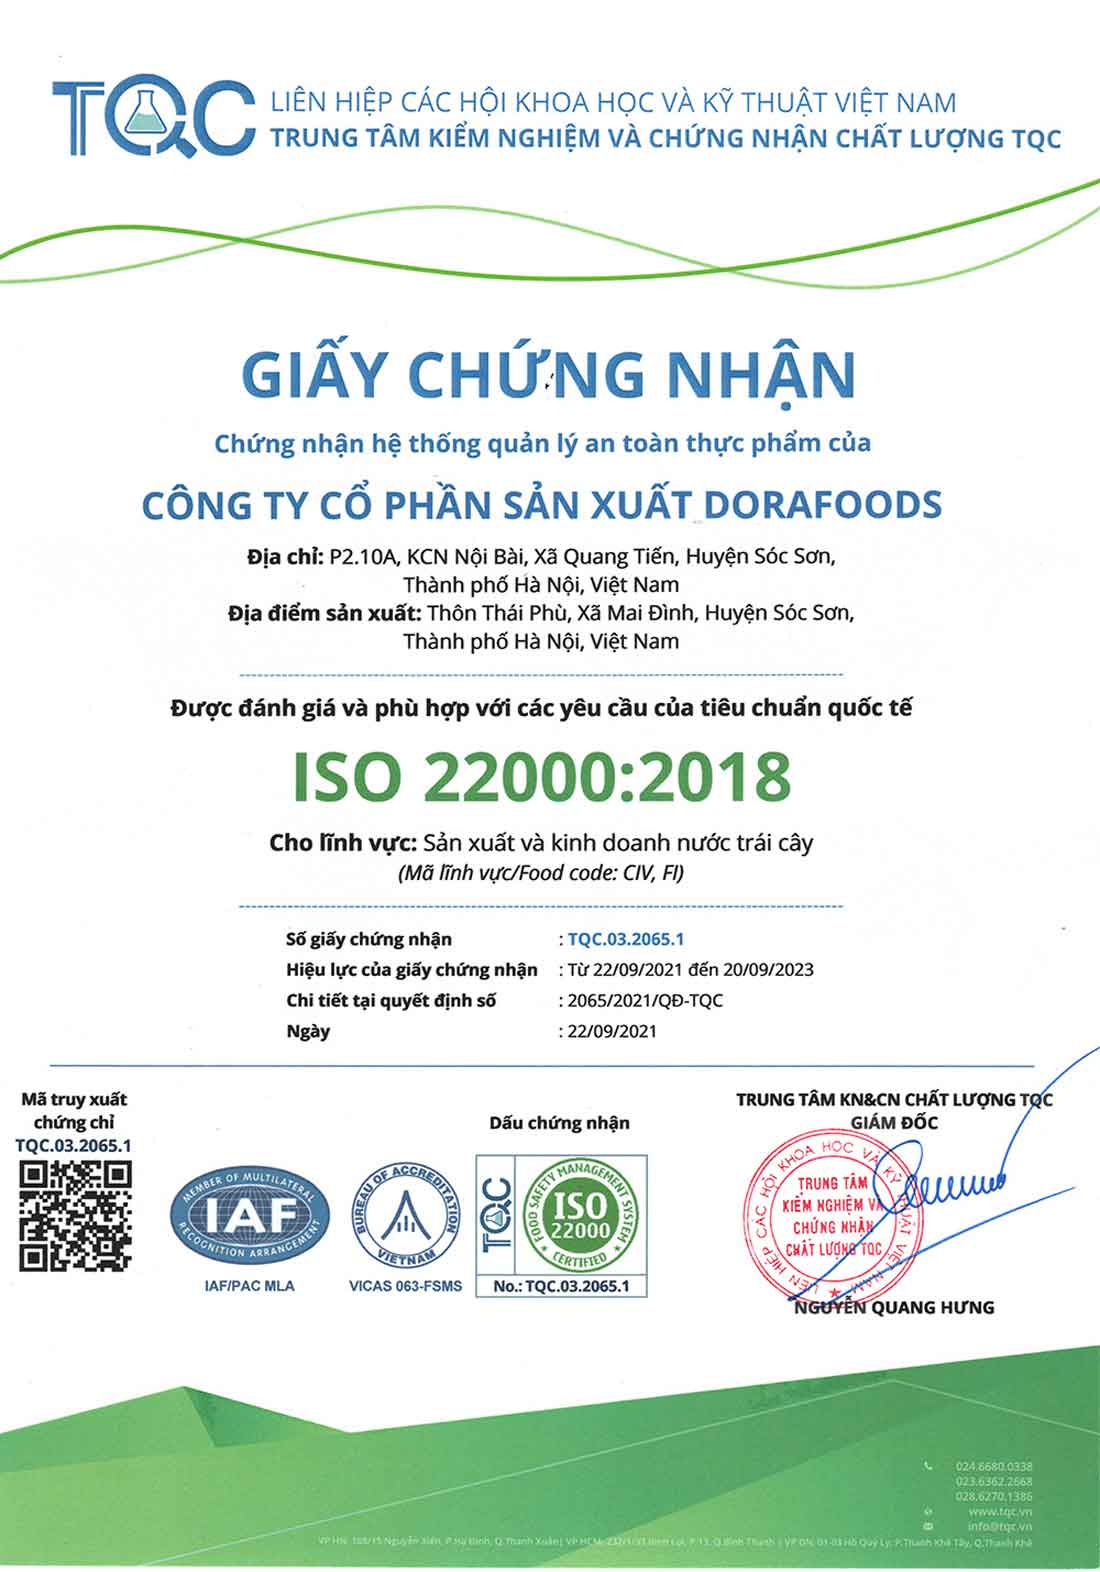 ISO-22000-2018-VI-small-size